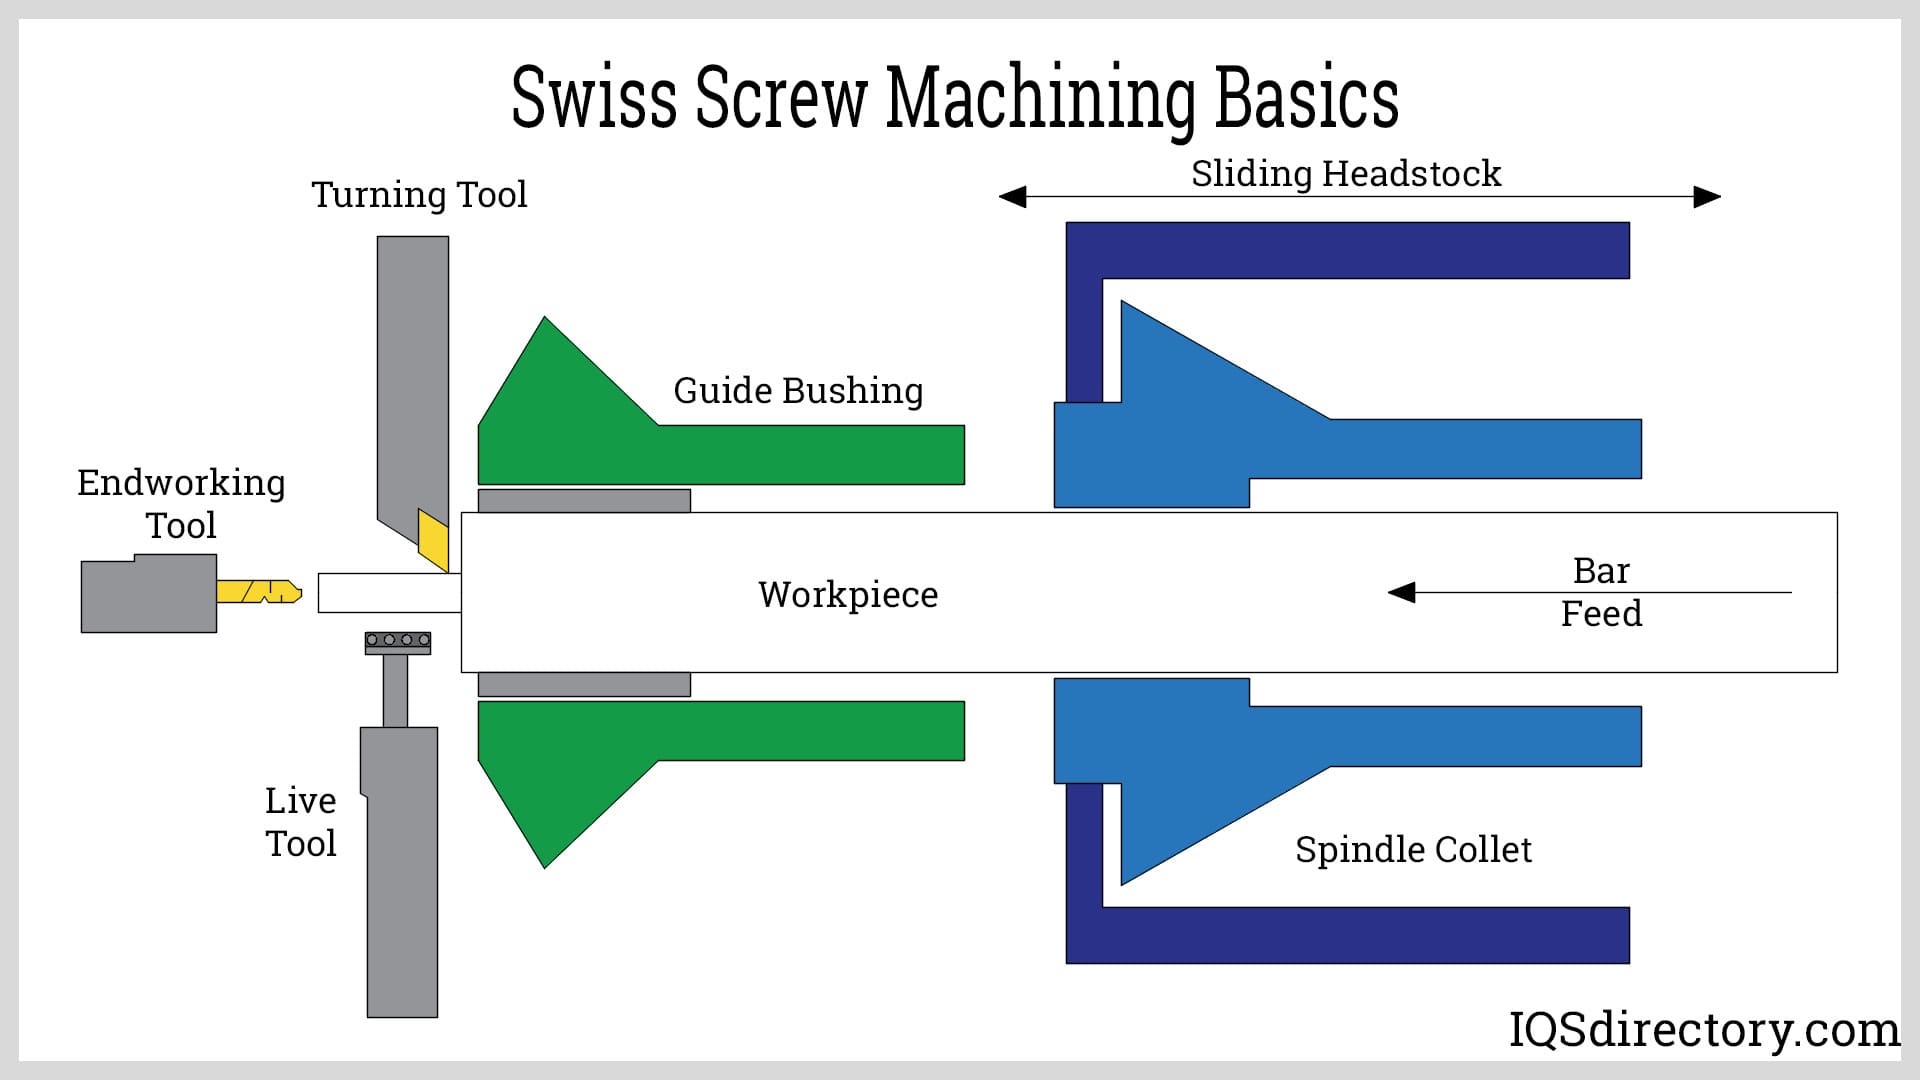 Swiss Screw Machining Basics